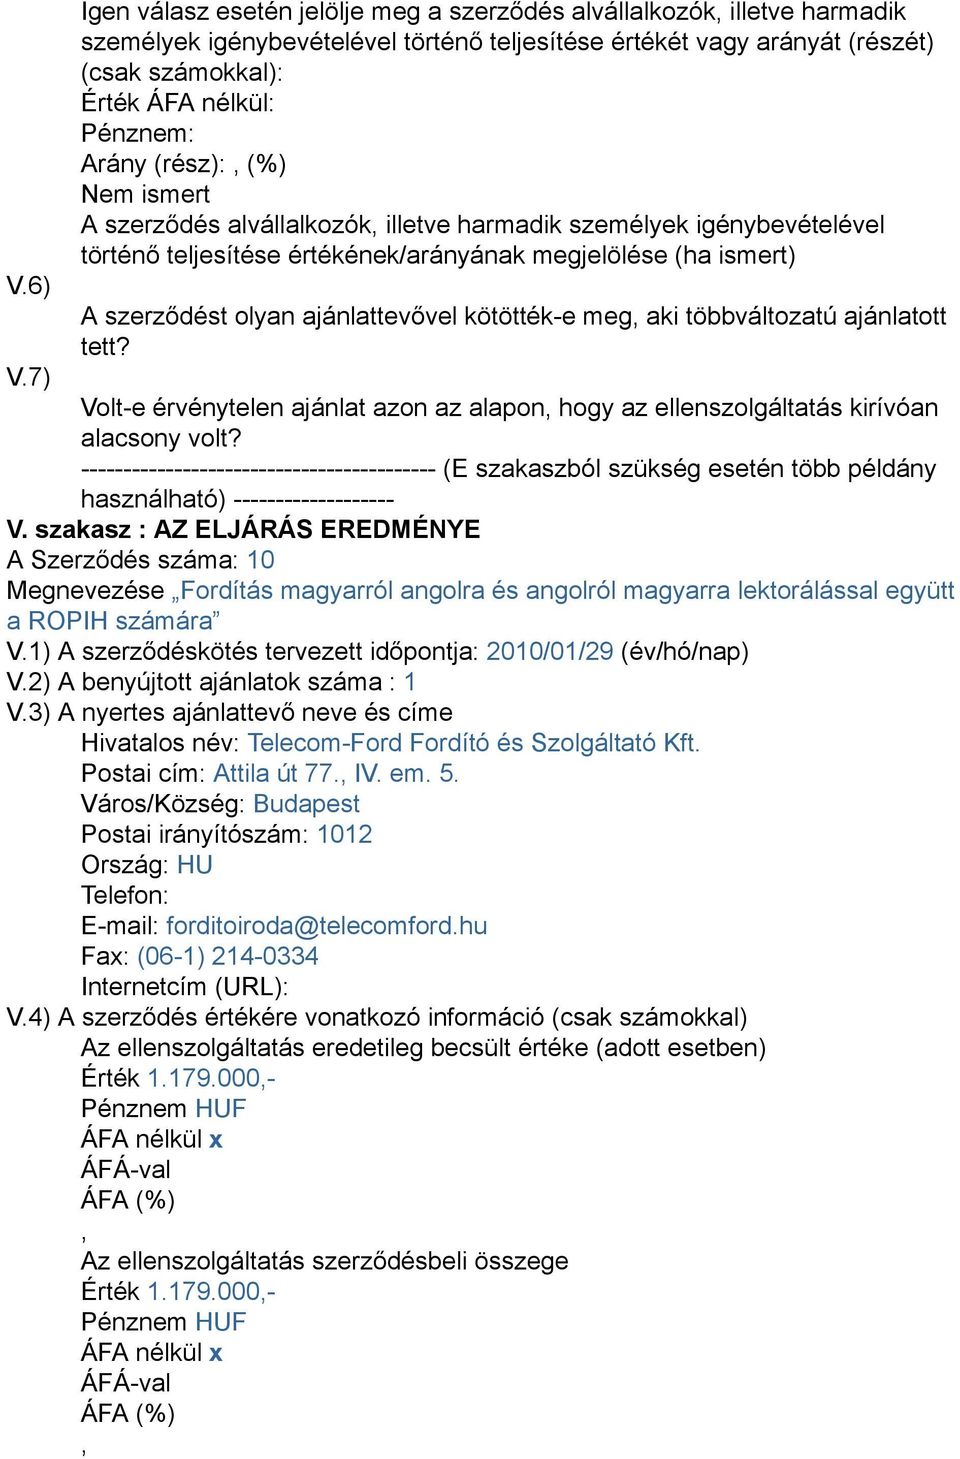 A Szerződés száma: 10 Megnevezése Fordítás magyarról angolra és angolról magyarra lektorálással együtt a ROPIH számára V.1) A szerződéskötés tervezett időpontja: 2010/01/29 (év/hó/nap) V.